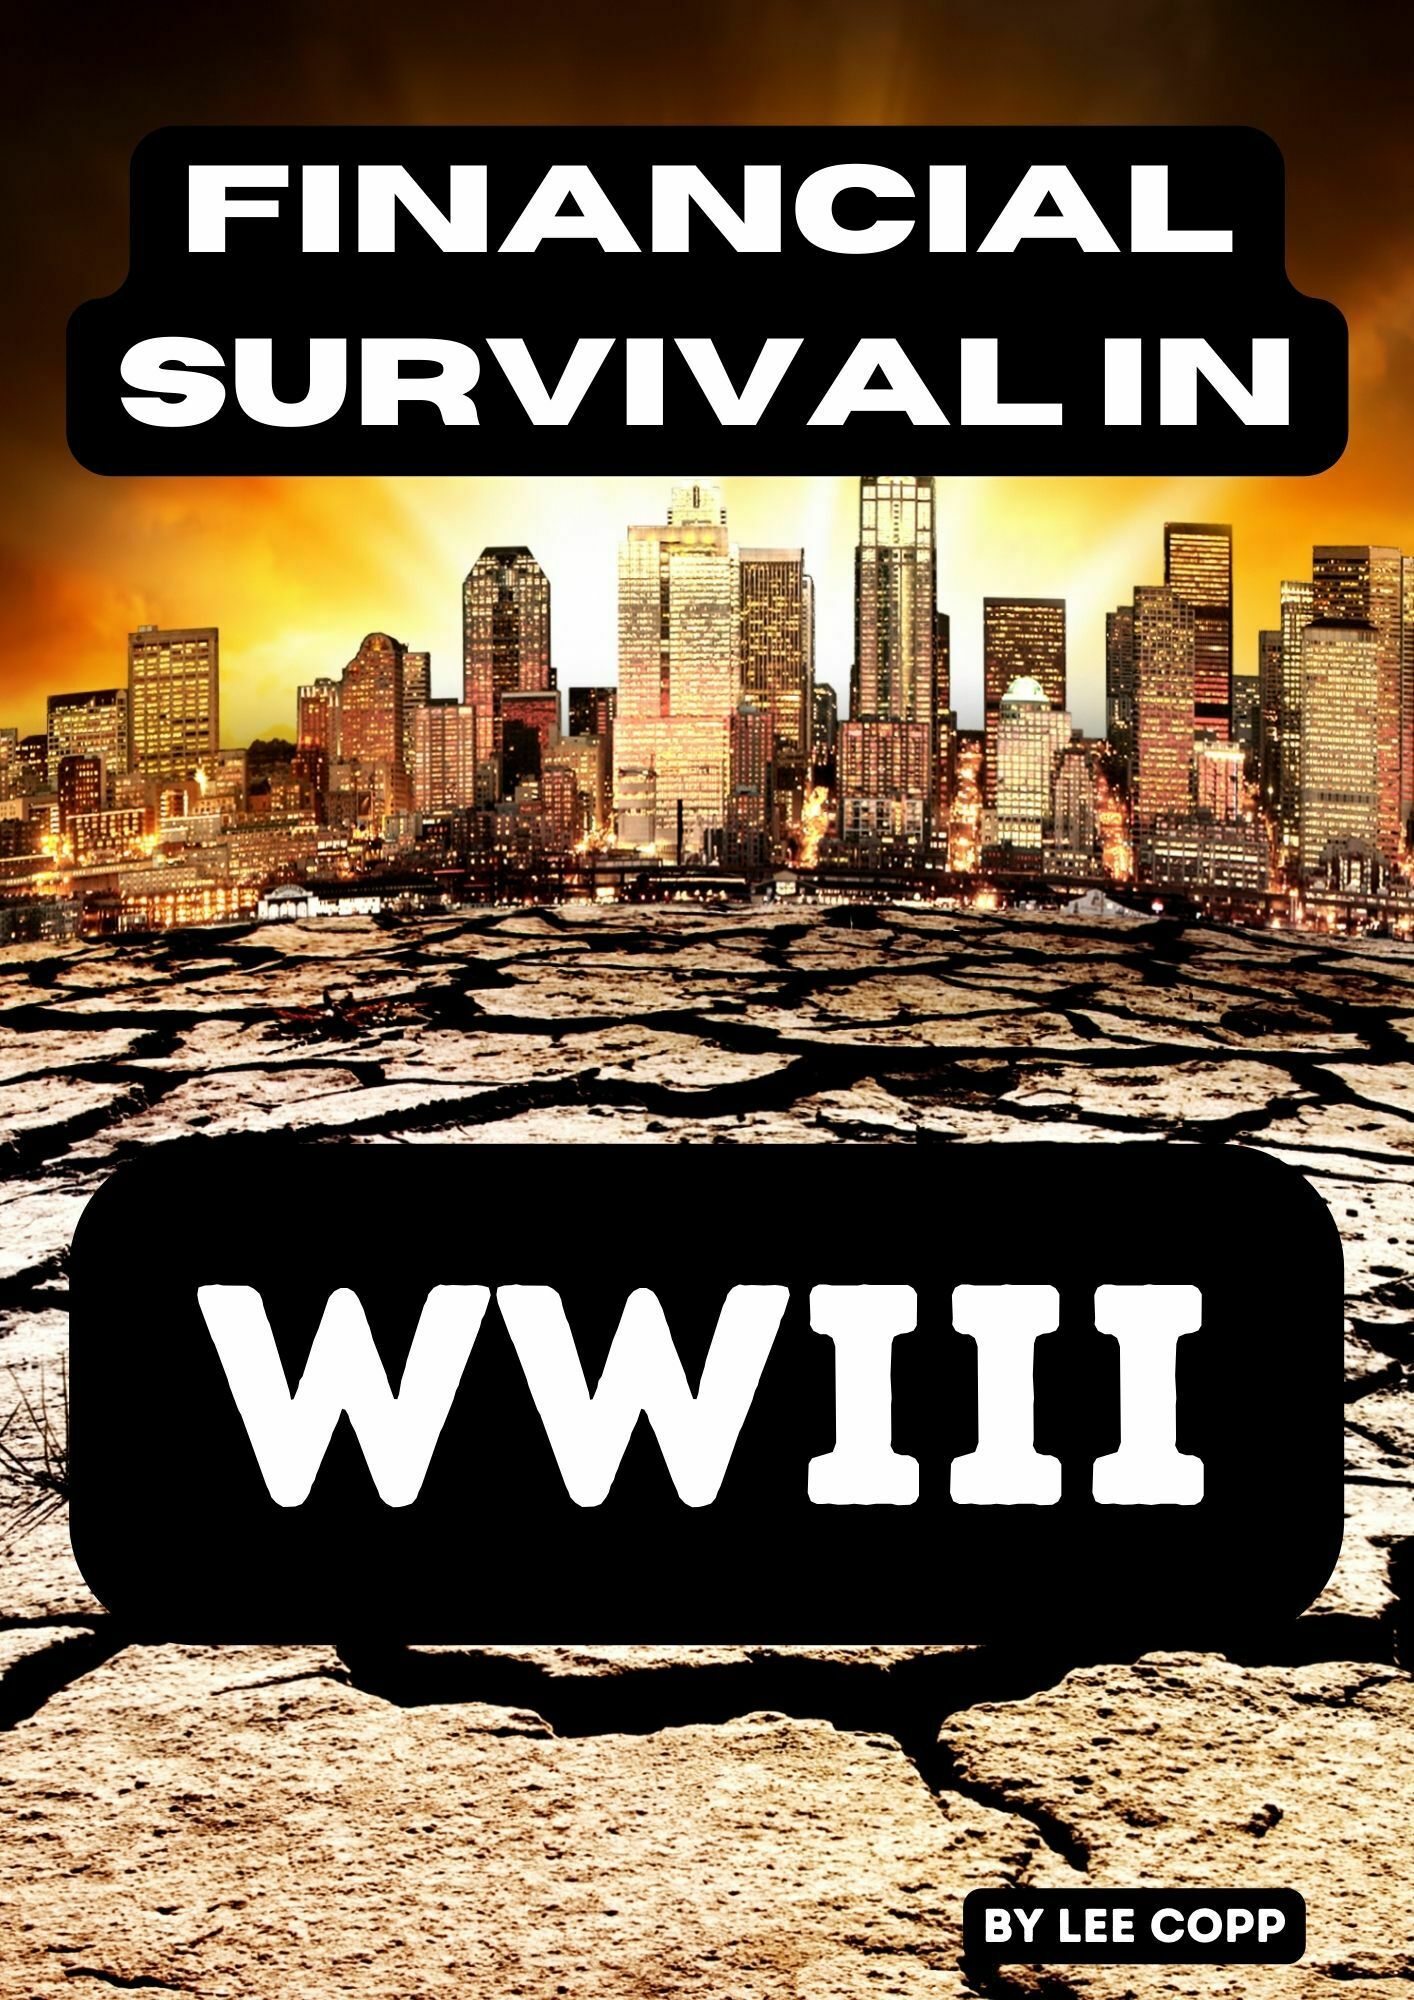 Financial Survival in WWIII